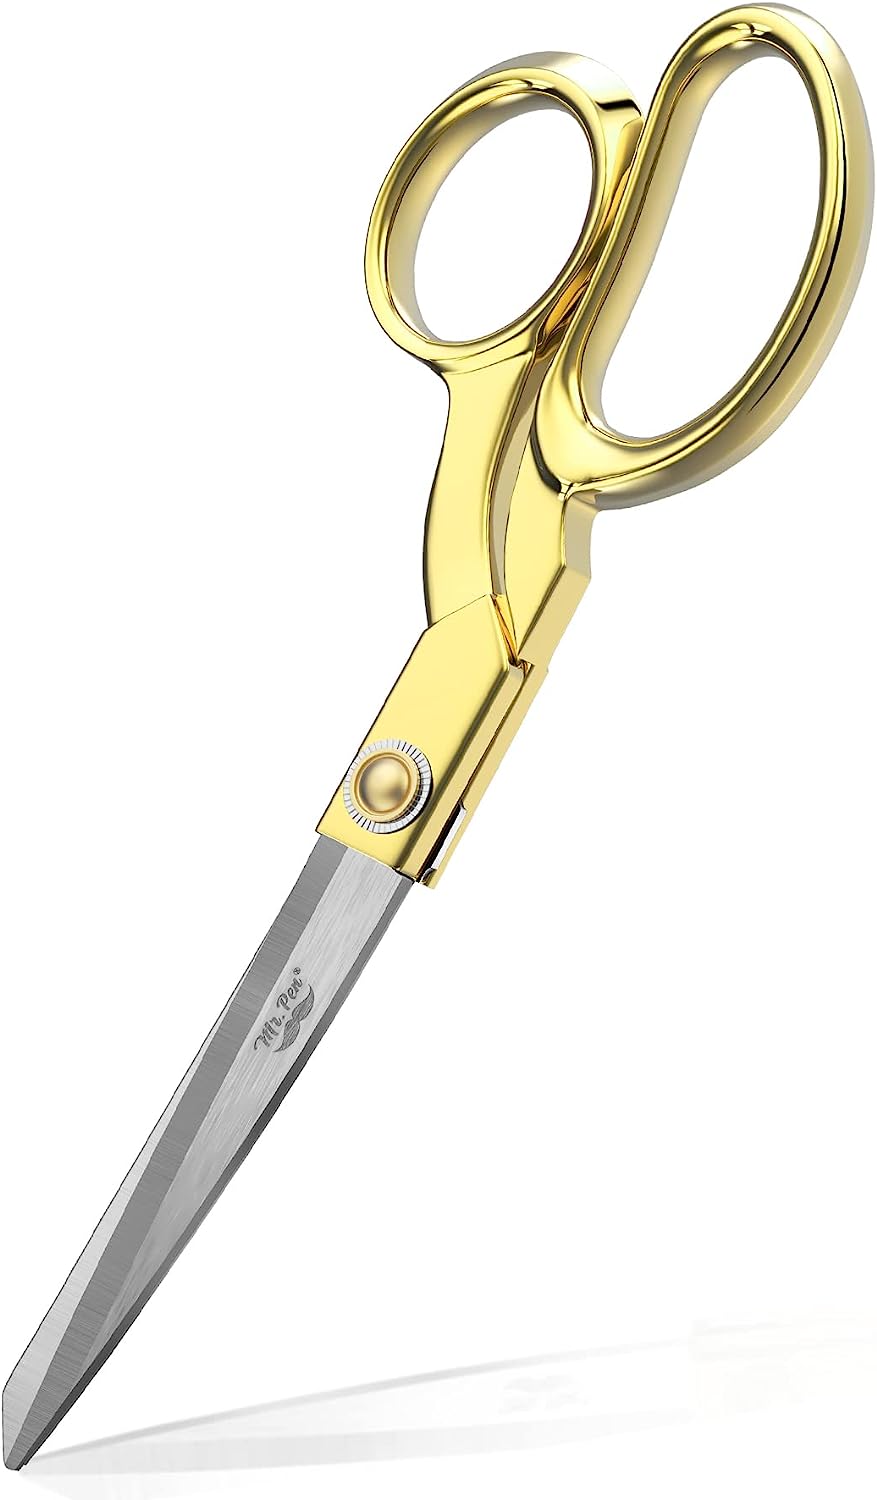 Fabric Scissors, 8-inch Gold Premium Tailor Scissors, Sewing Scissors for  Fabric Cutting, Fabric Cutter - Mr. Pen Store